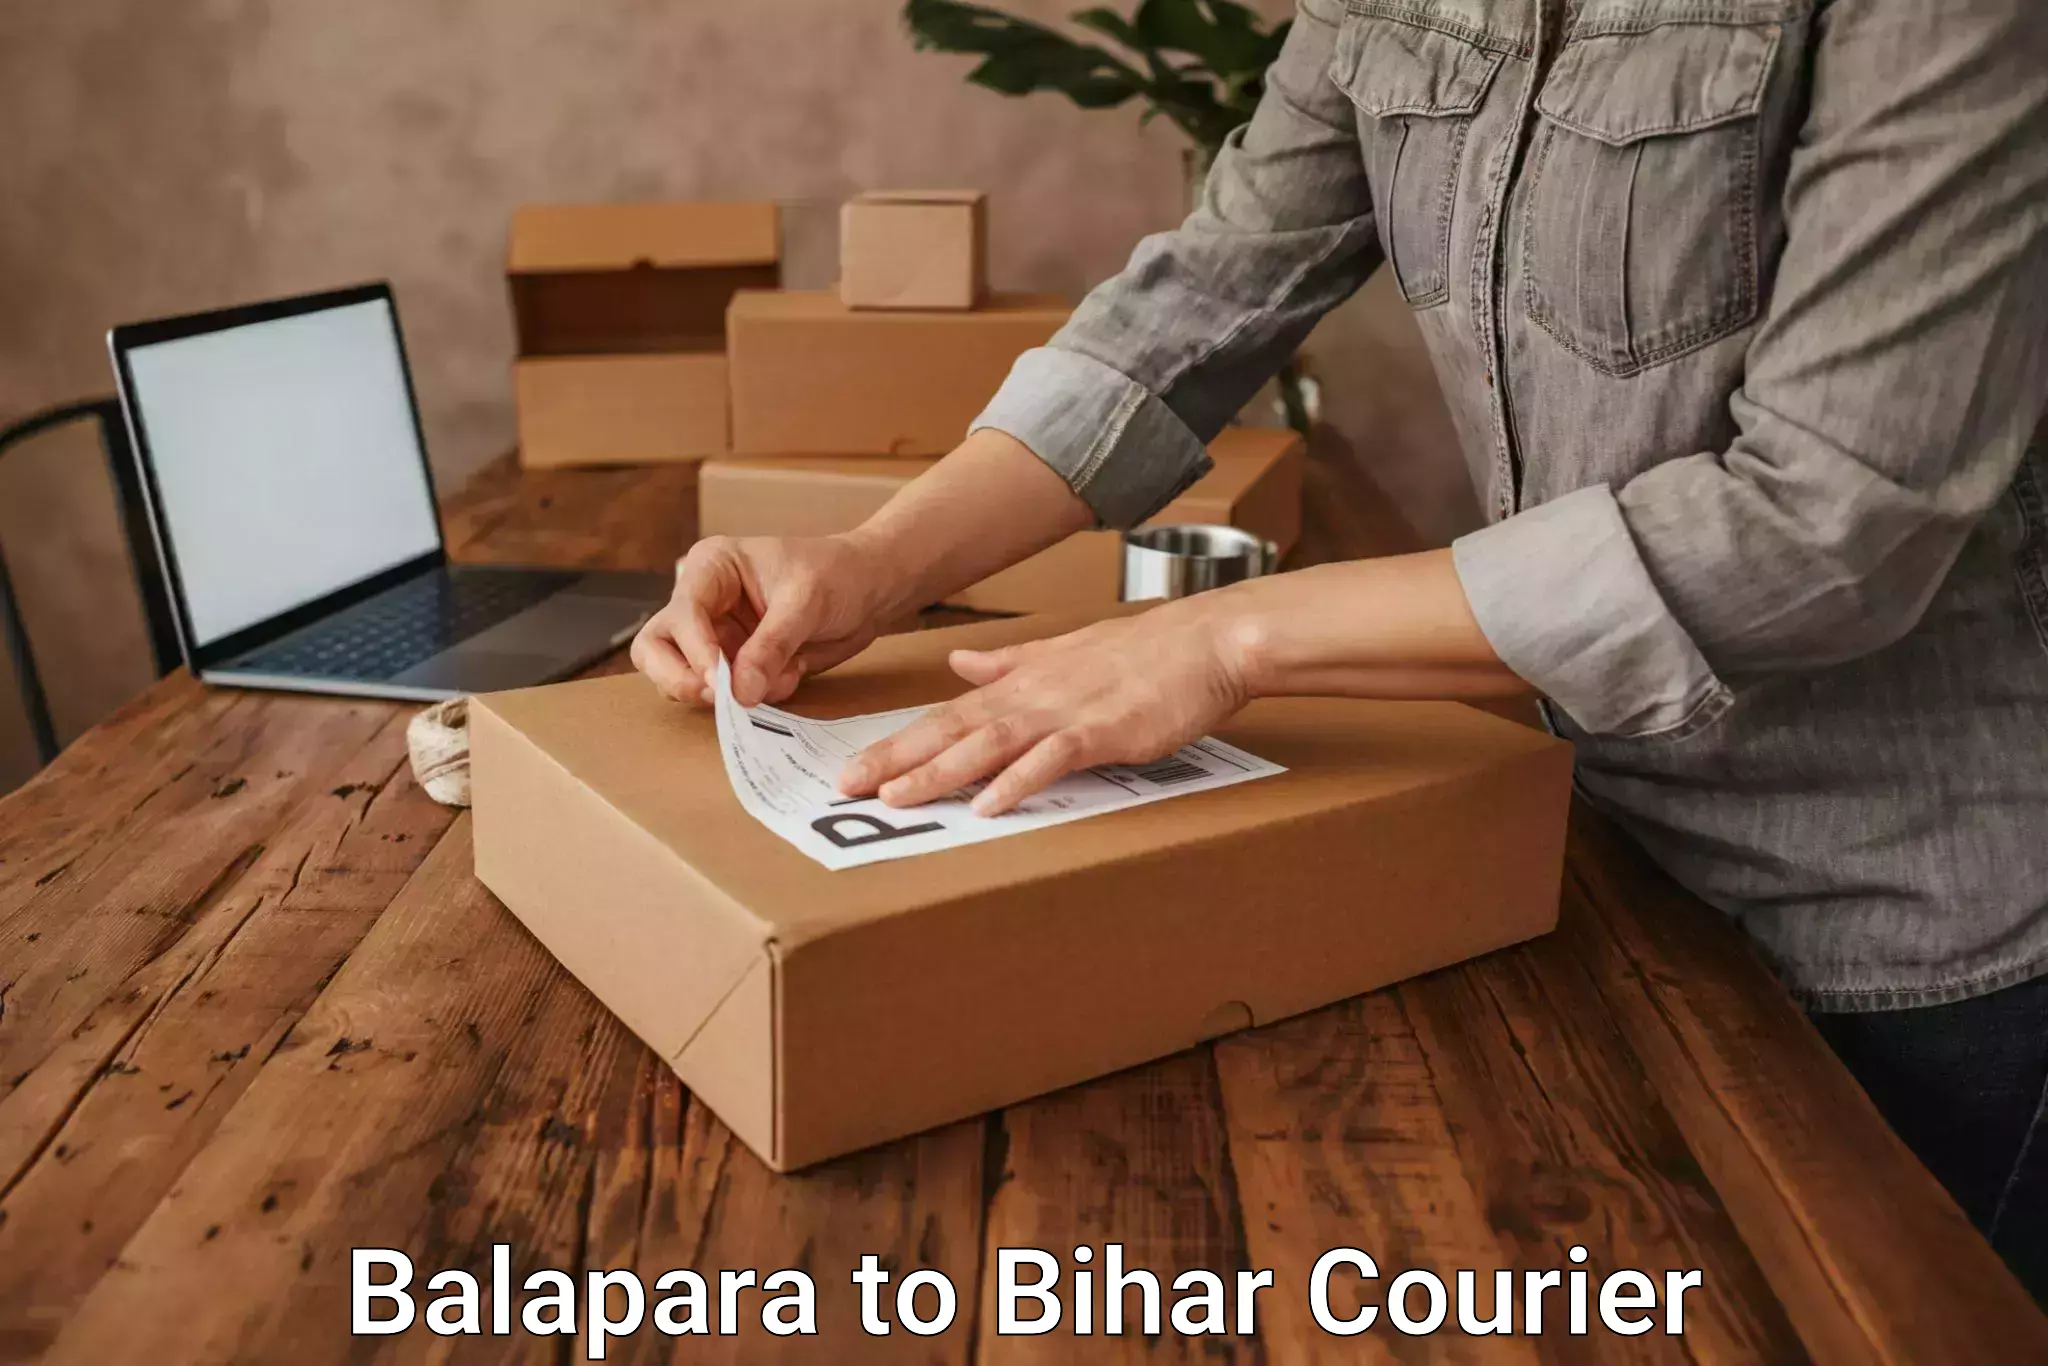 Cargo delivery service Balapara to Vaishali